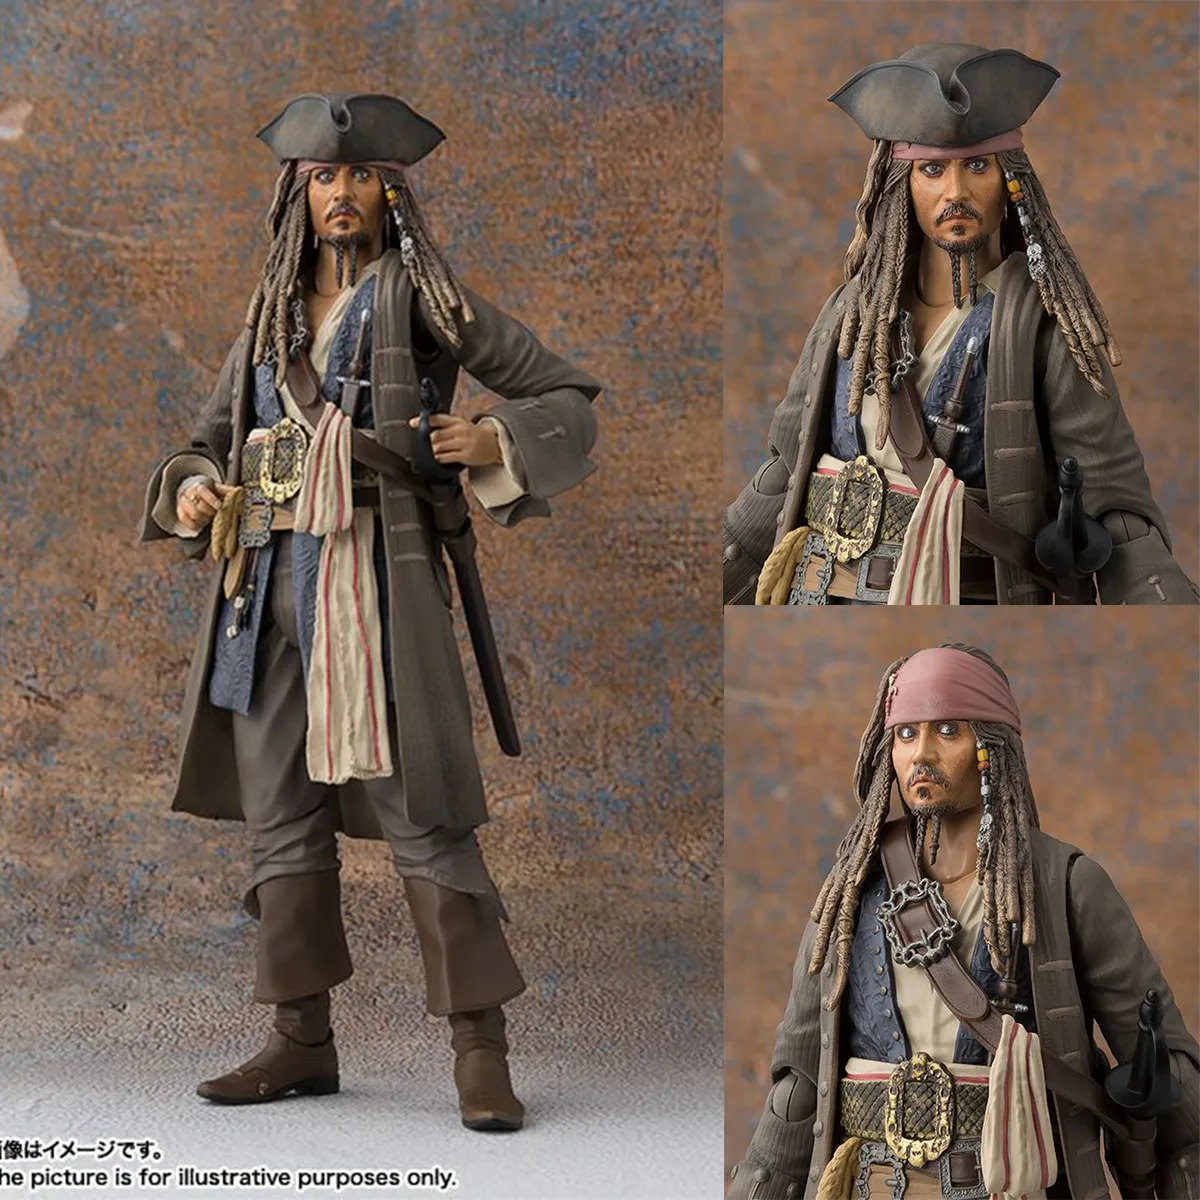 McFarlane Mô hình nhân vật Jack Sparrow Support dòng Disney Mirrorverse  18cm DMMF01  GameStopvn